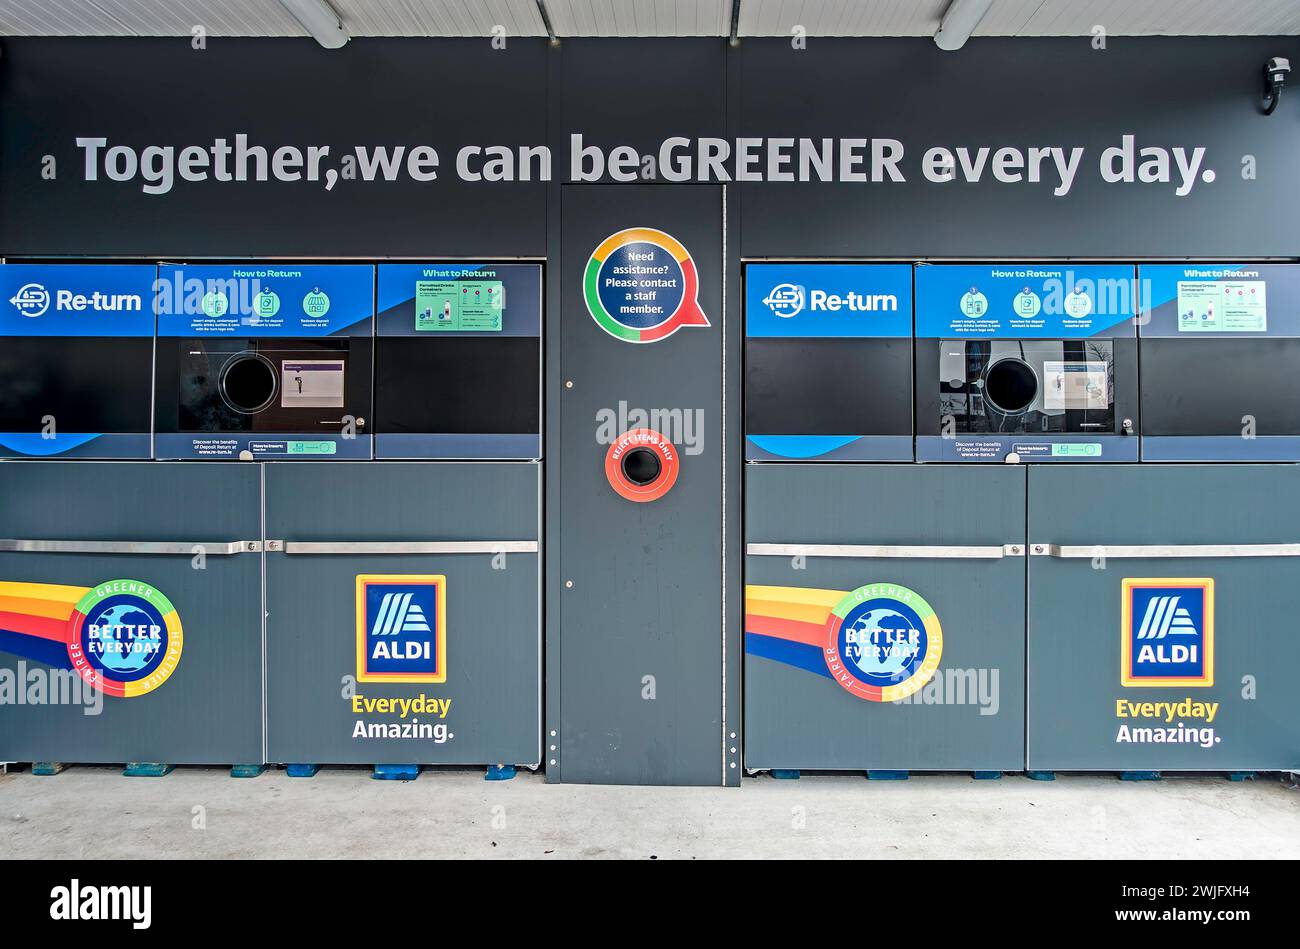 Les nouvelles stations de recyclage automatisées Re-Turn pour les conteneurs de boissons vides ont récemment été introduites en Irlande. Vu ici dans un magasin Aldi. Banque D'Images